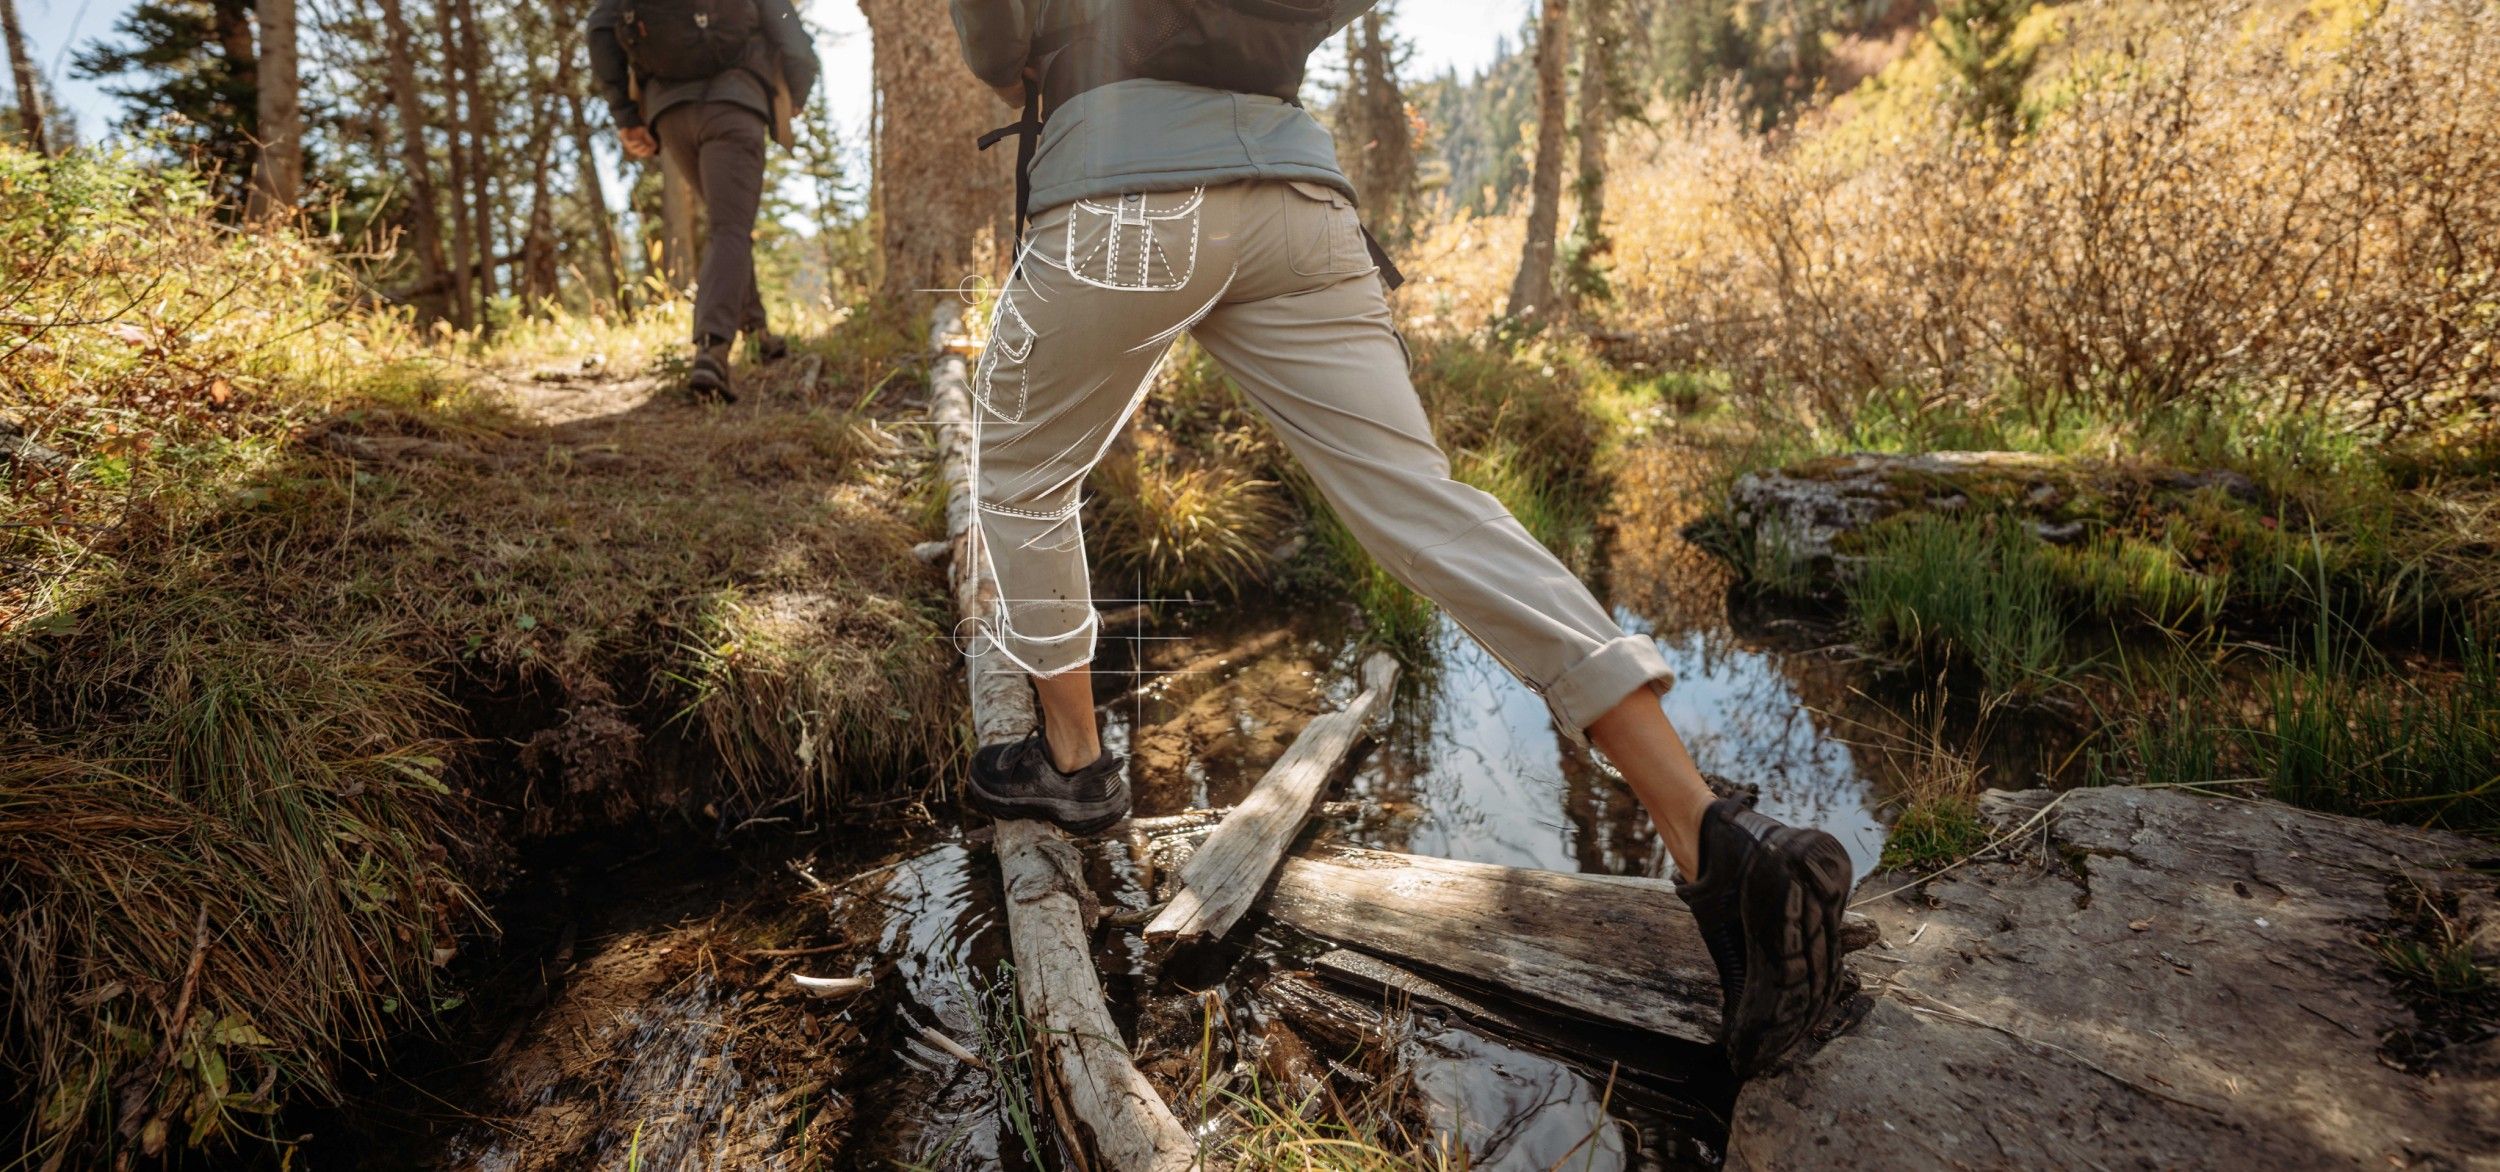 Best Women's Hiking Pants  3 Kuhl Women's Pants Review - Backwoods Pursuit